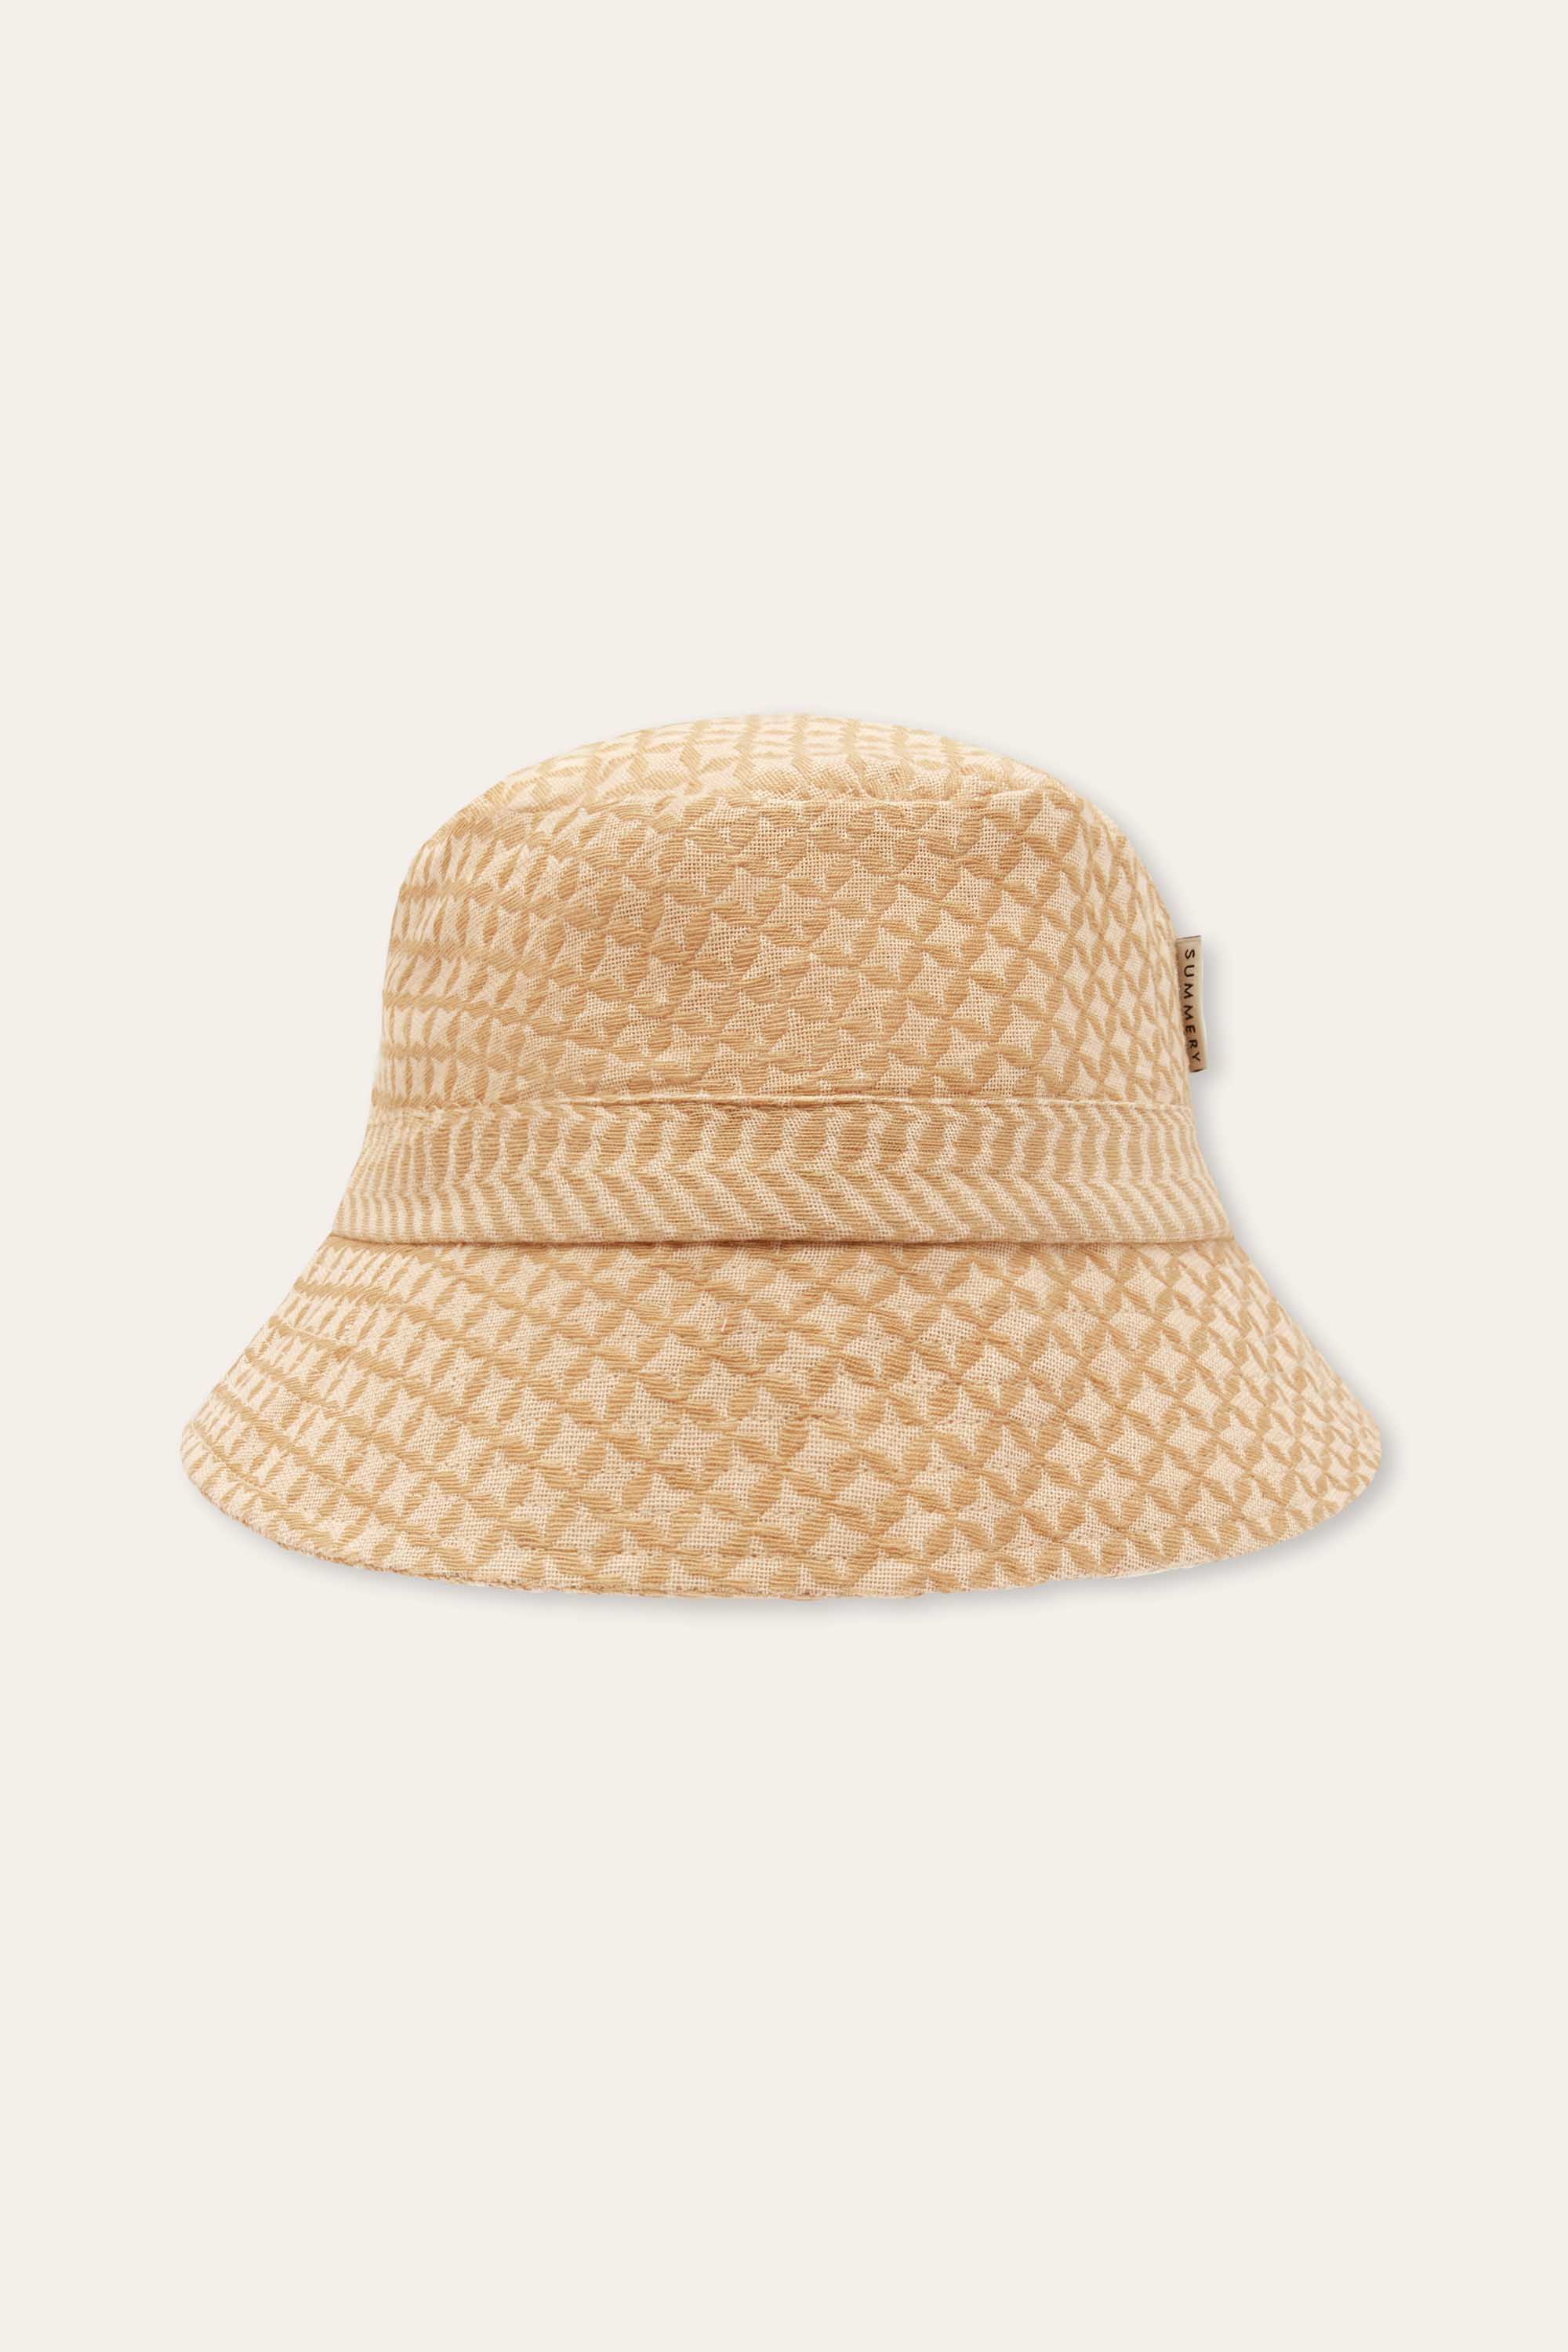 SUMMERY Copenhagen Mio Bucket Hat Accessories 507 Tan